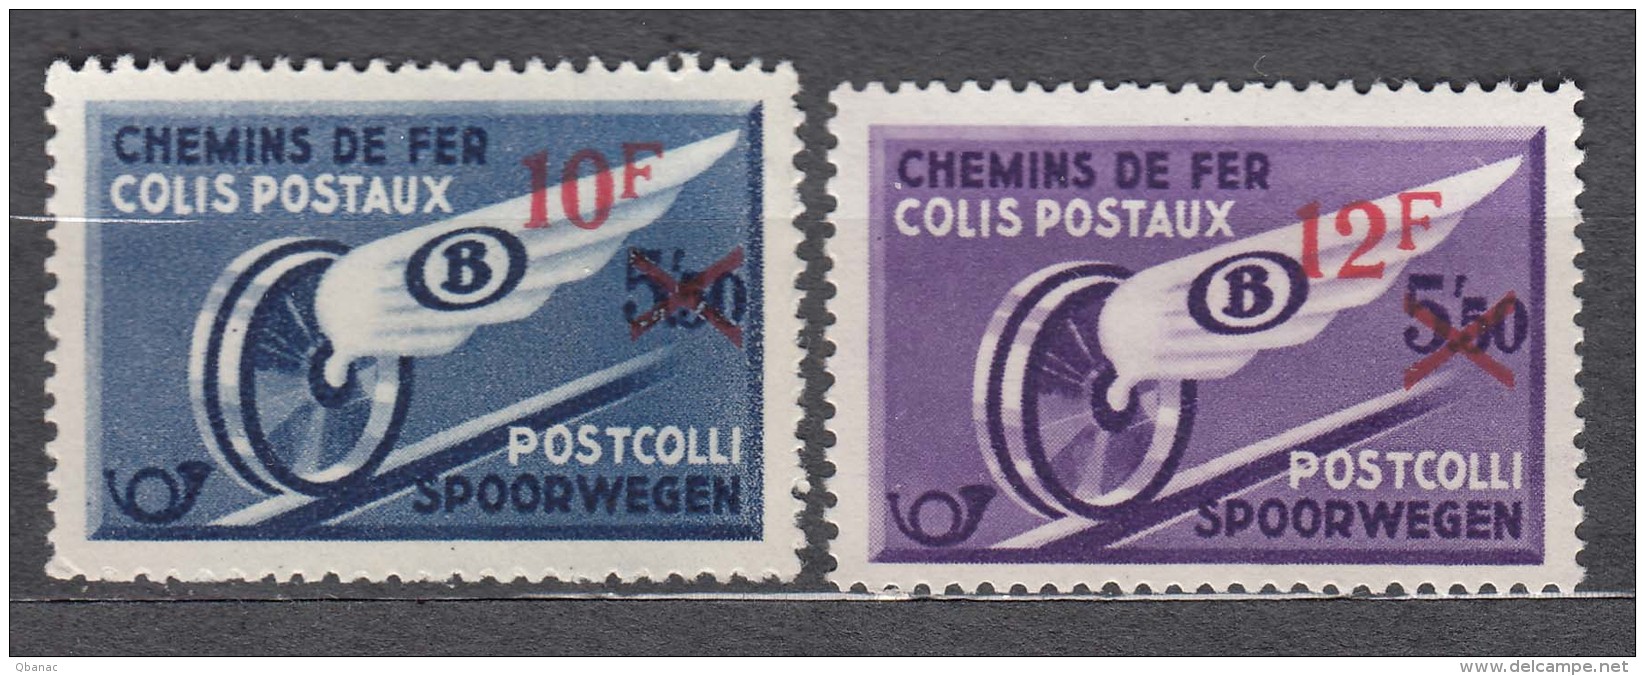 Belgium Postpaket Stamps, Mint Hinged - Luggage [BA]